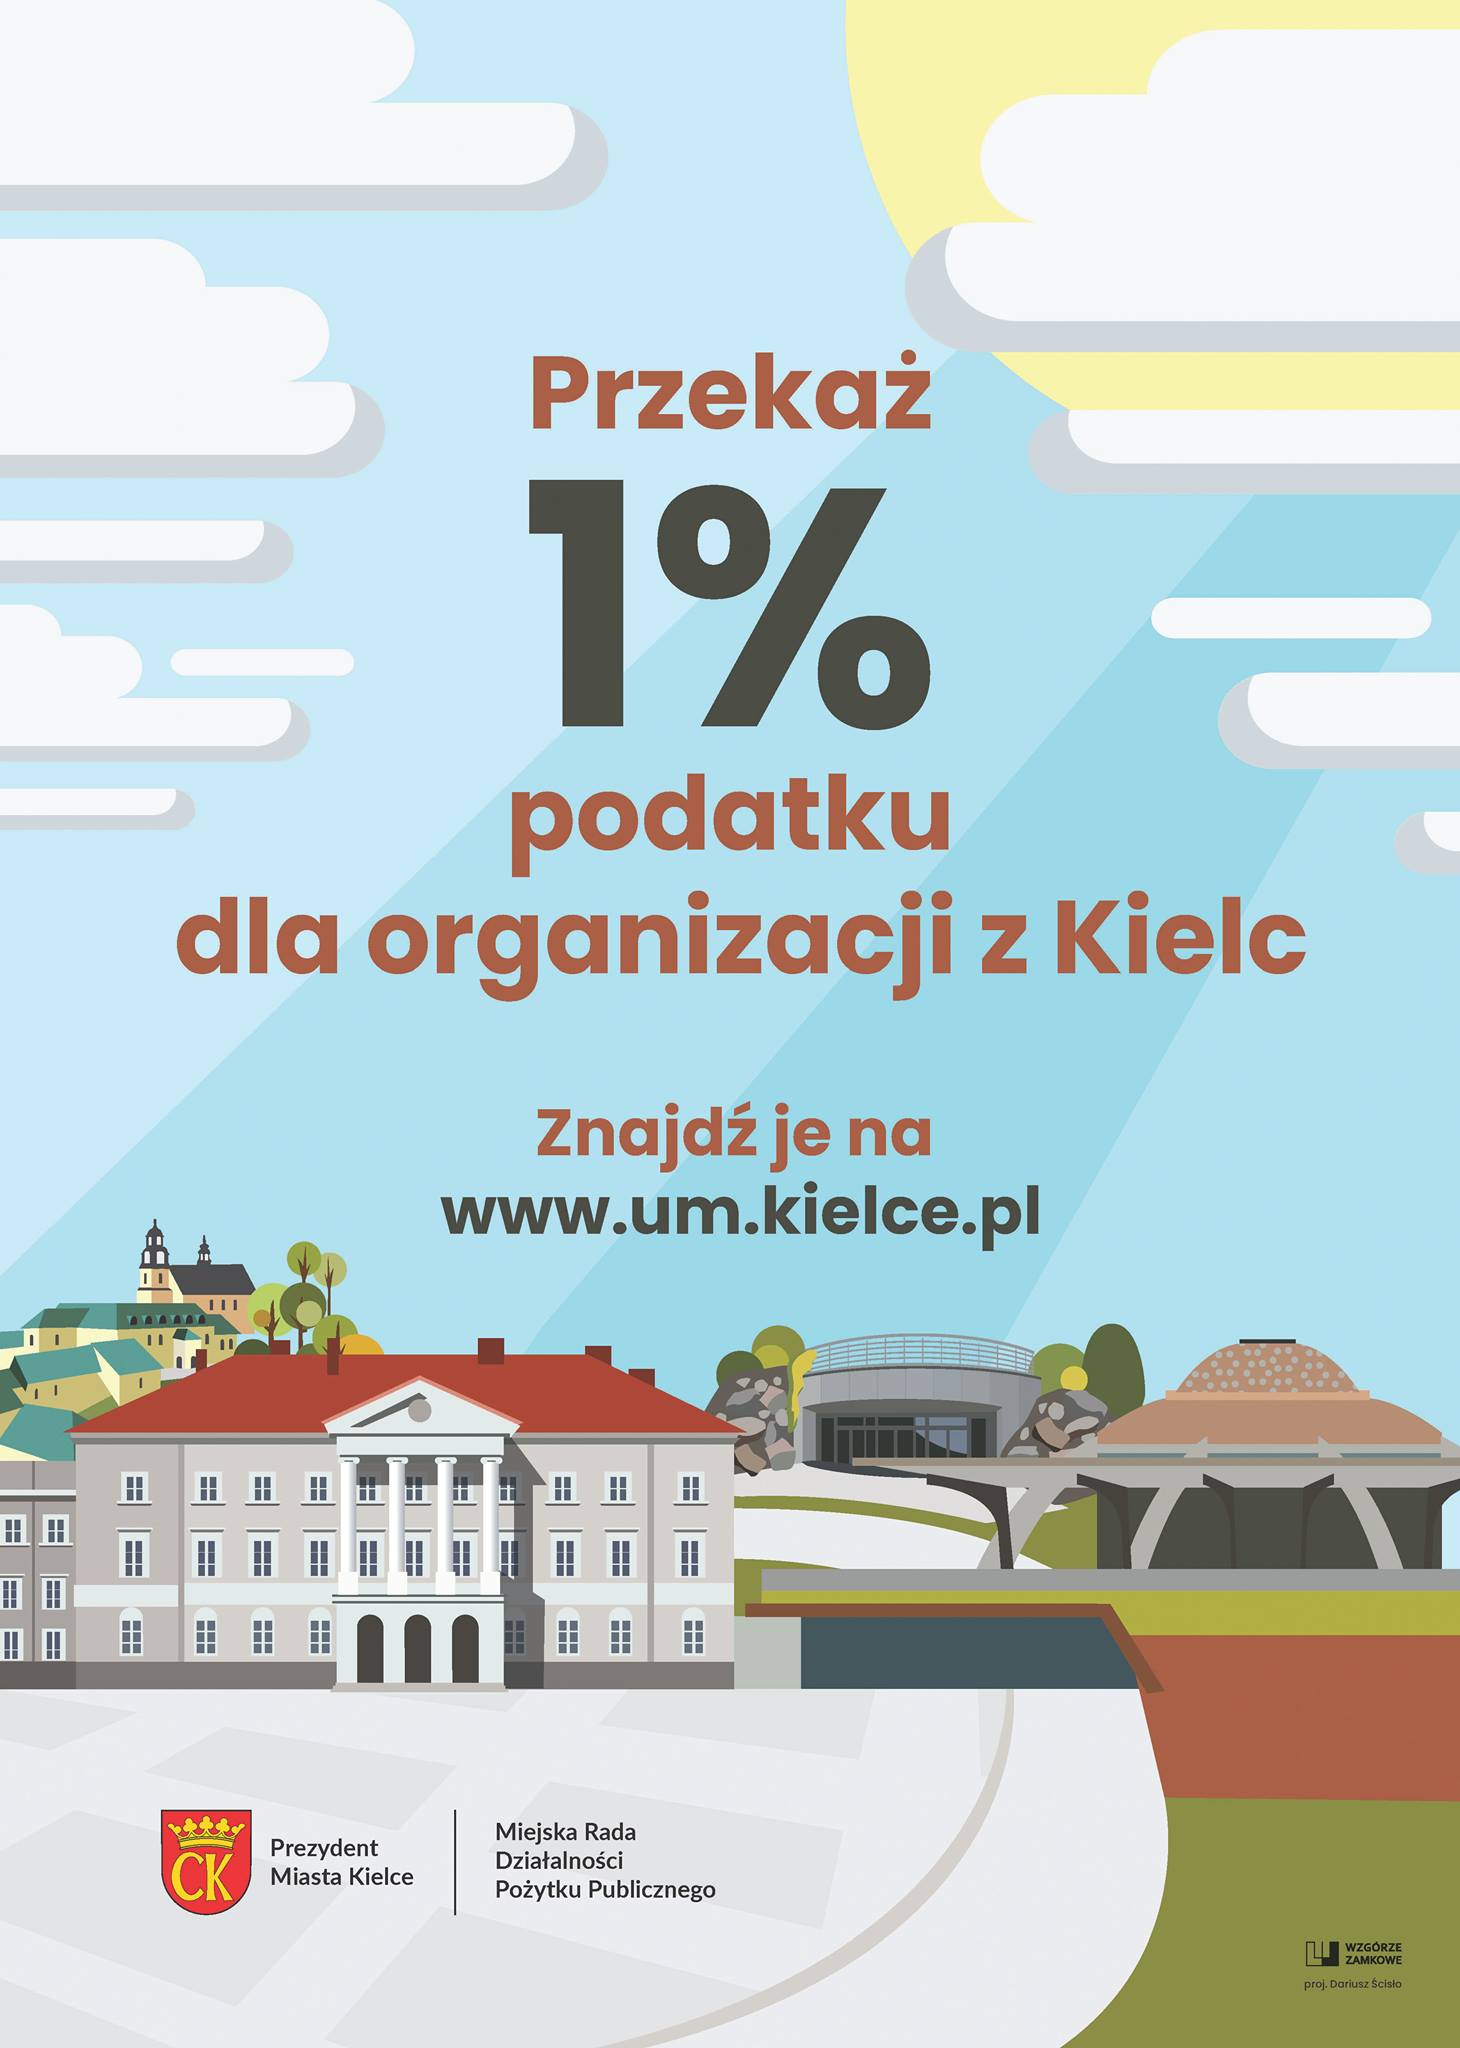 1% podatku zostaw w Kielcach!